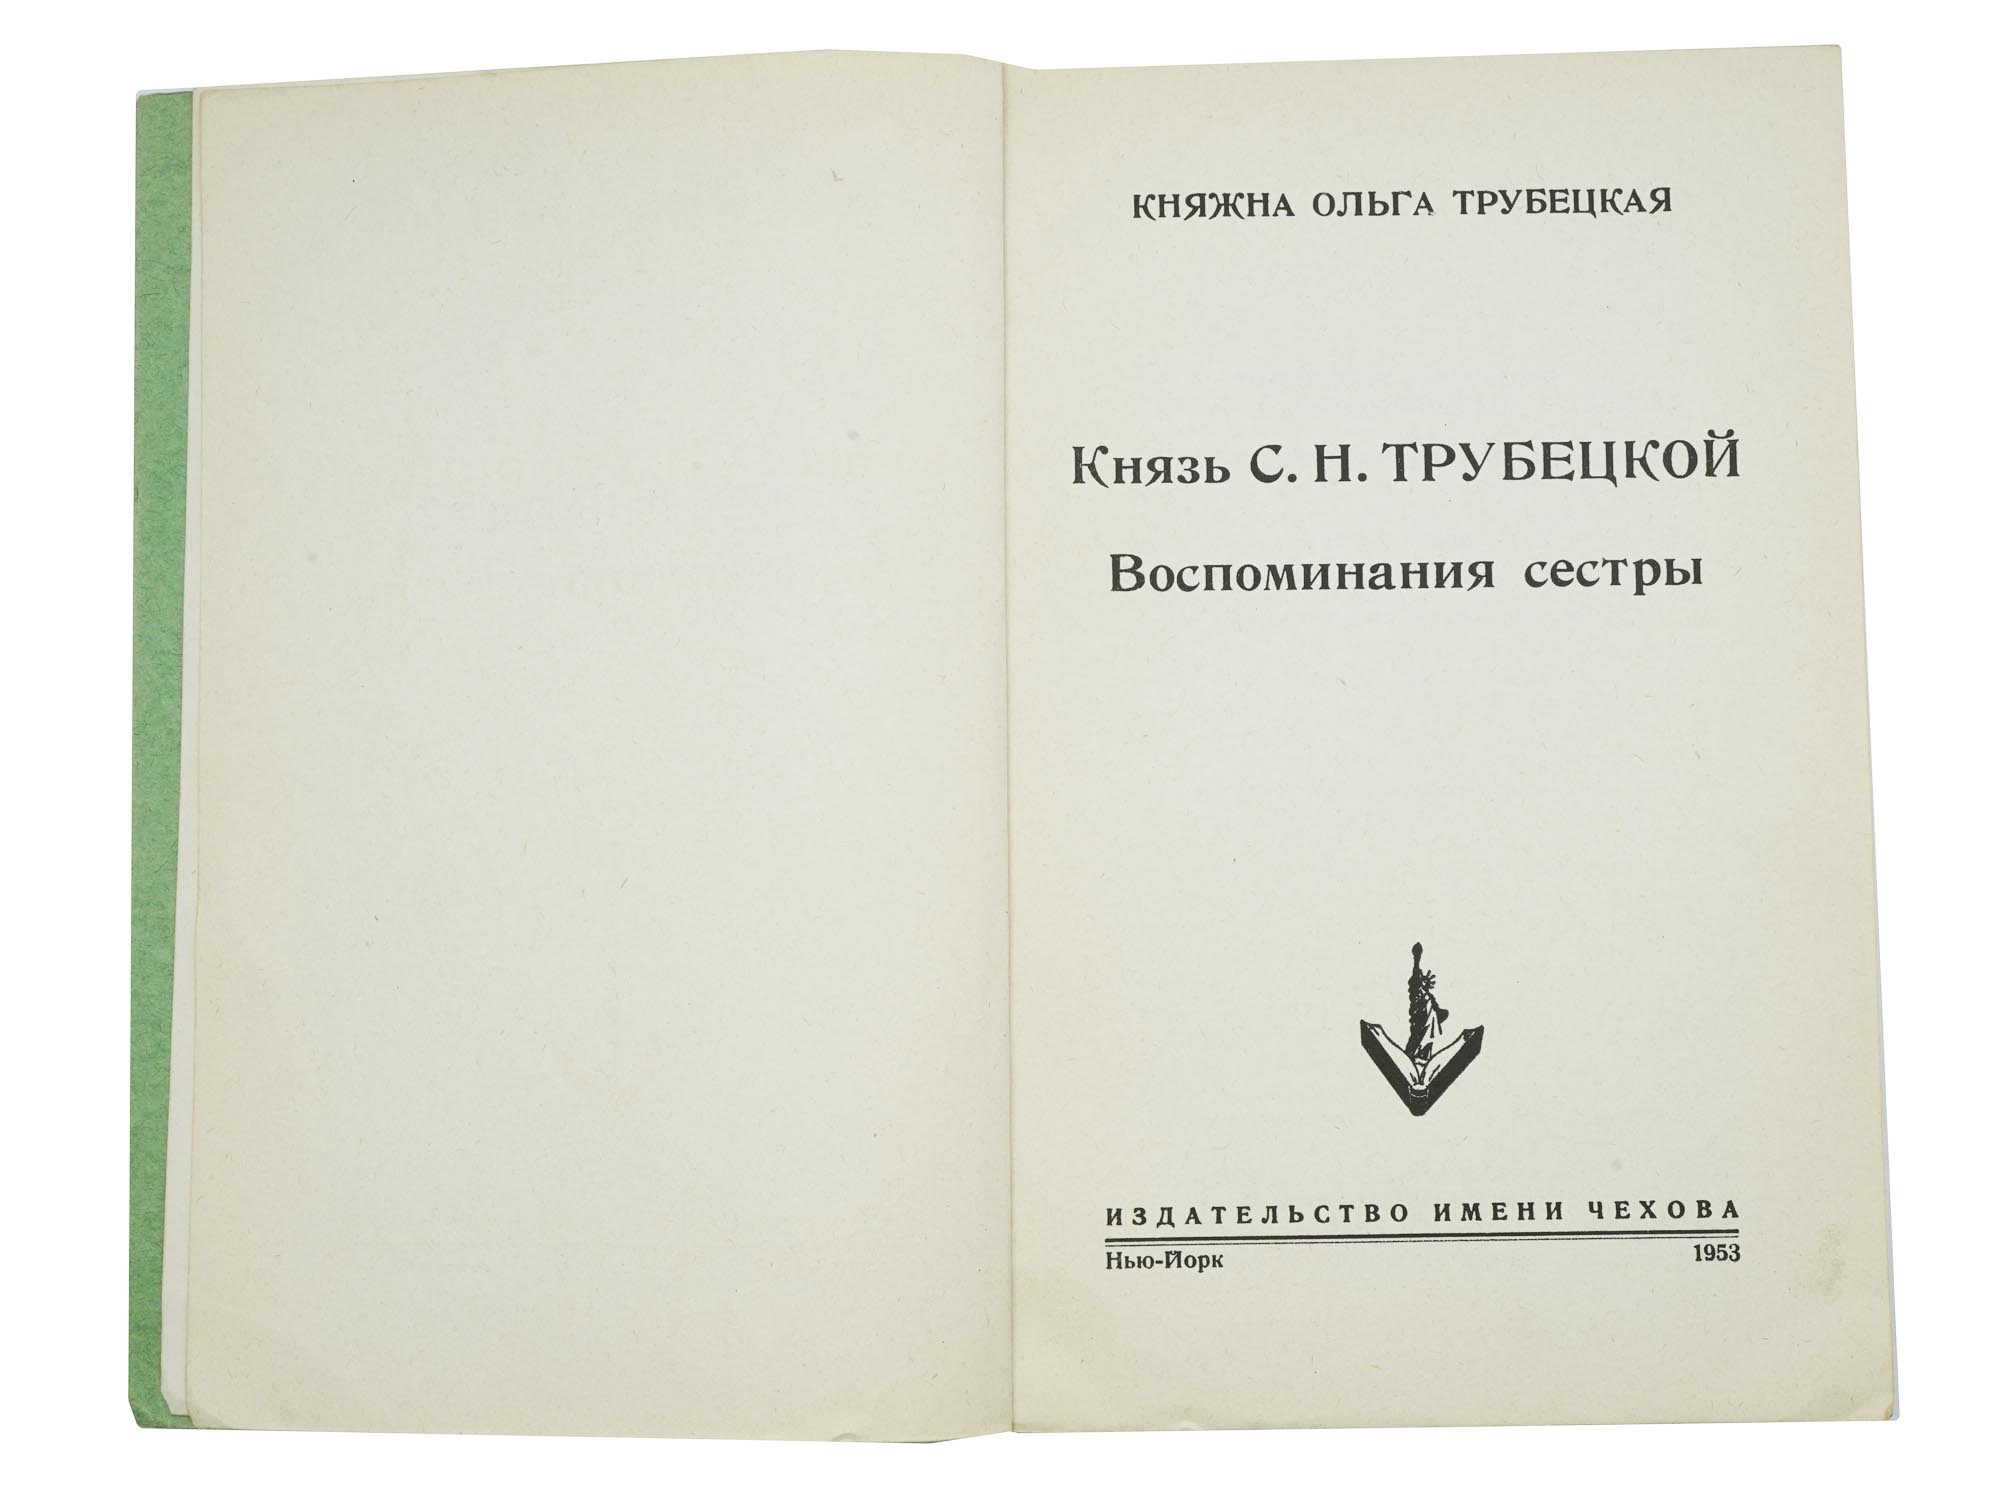 RUSSIAN MEMOIR BOOKS CHEKHOV PUBLISHING HOUSE PIC-3